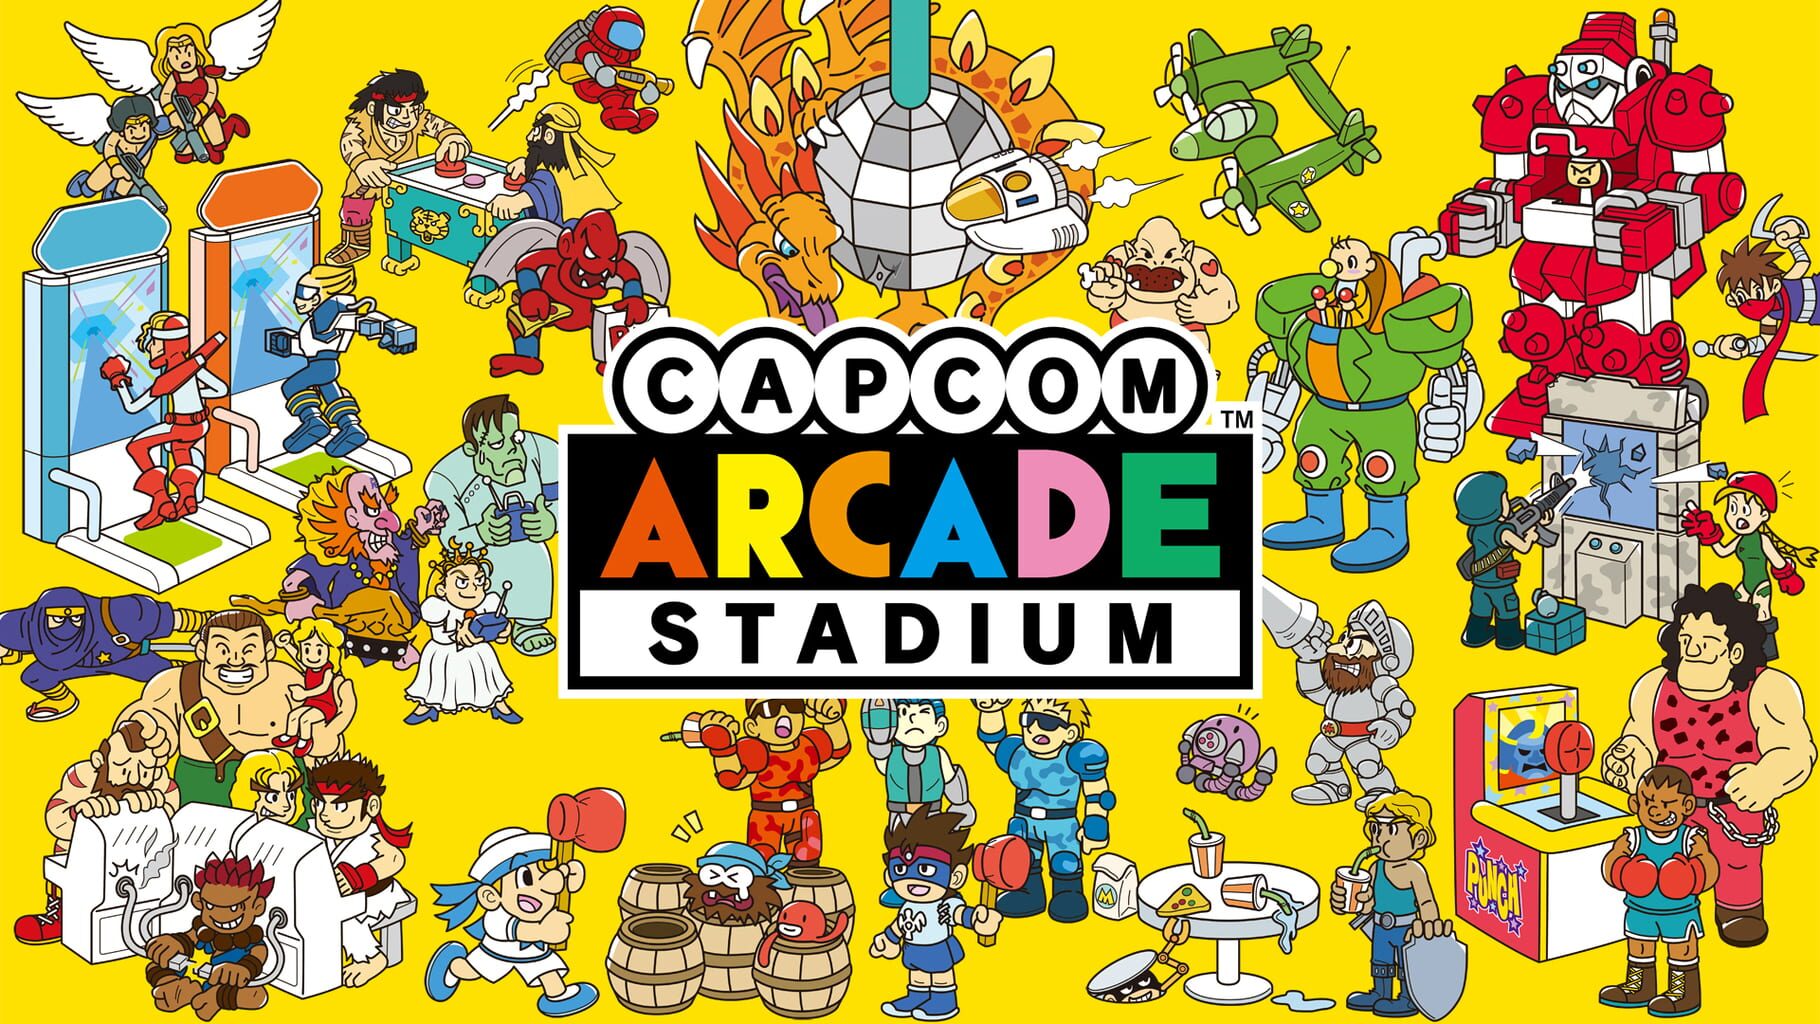 Capcom Arcade Stadium artwork